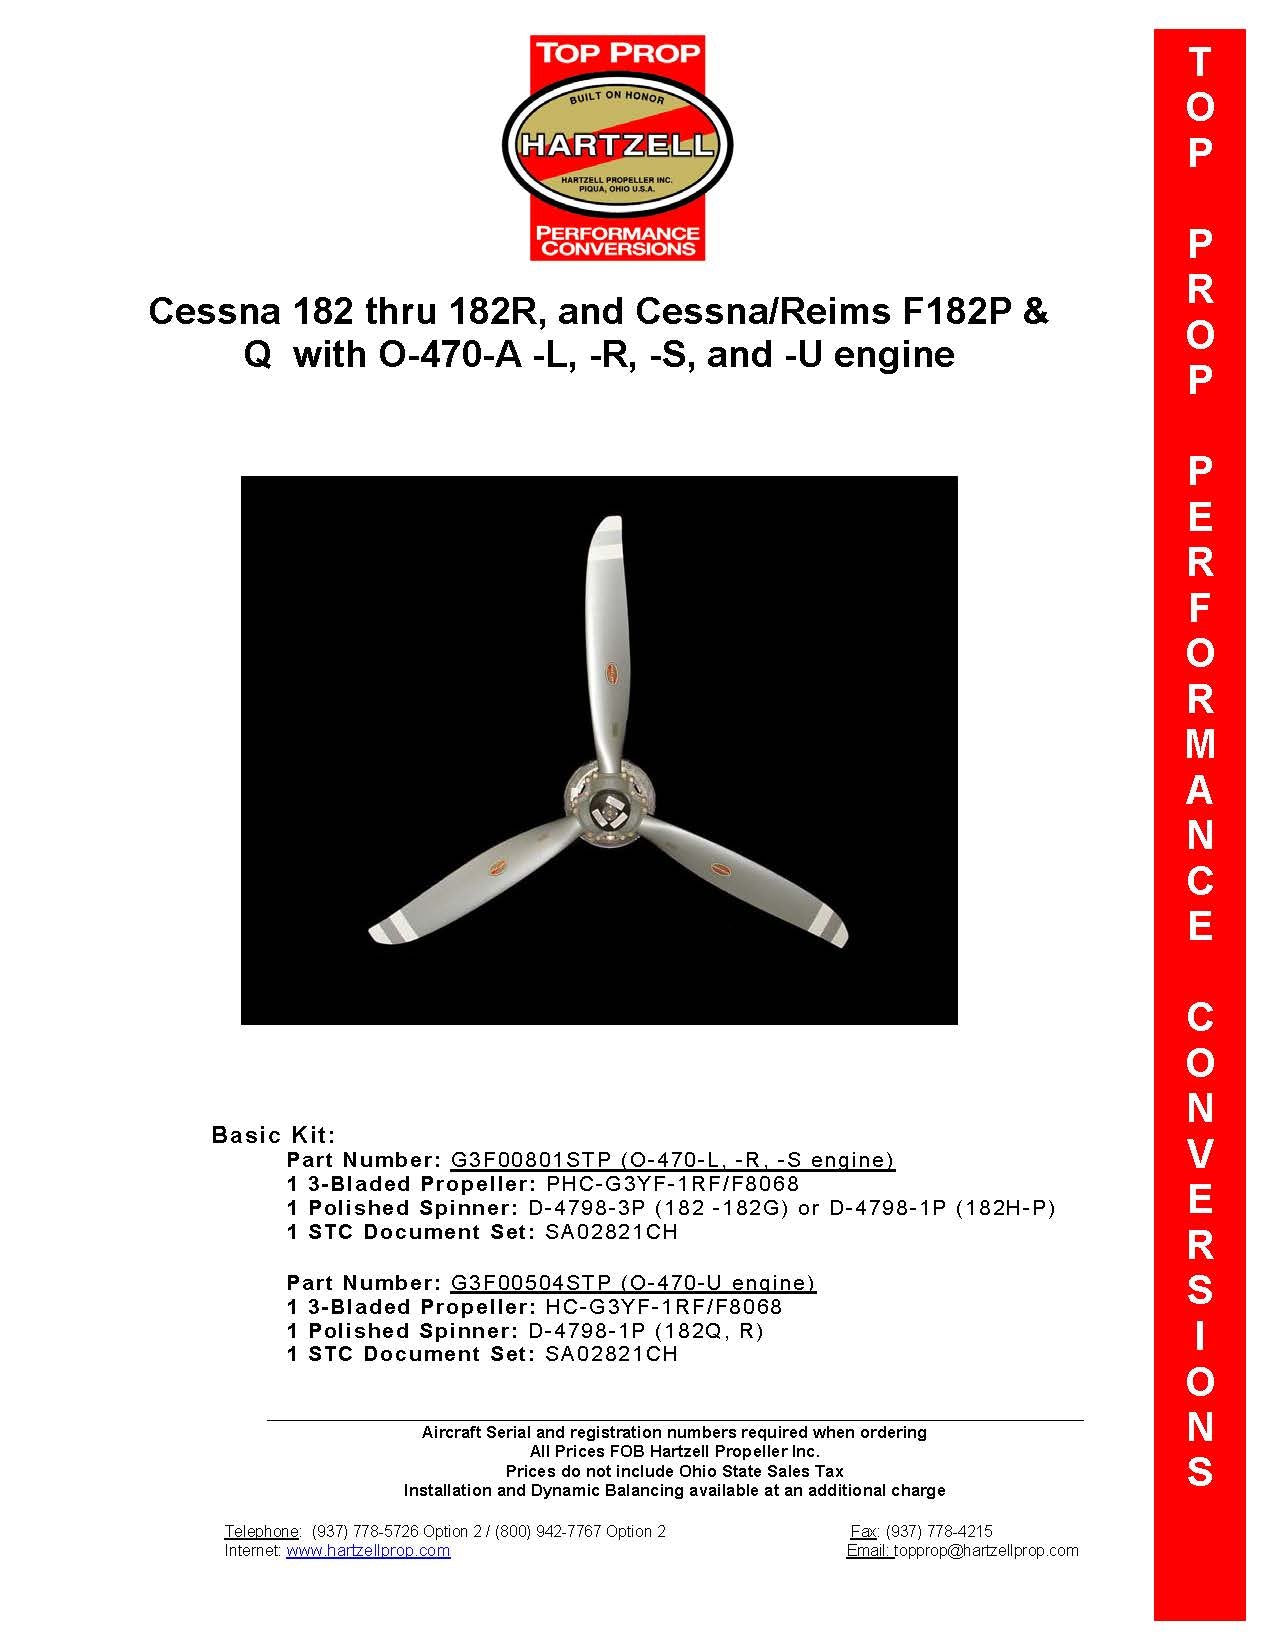 CESSNA-182-G3F00801STP-PAGE-1